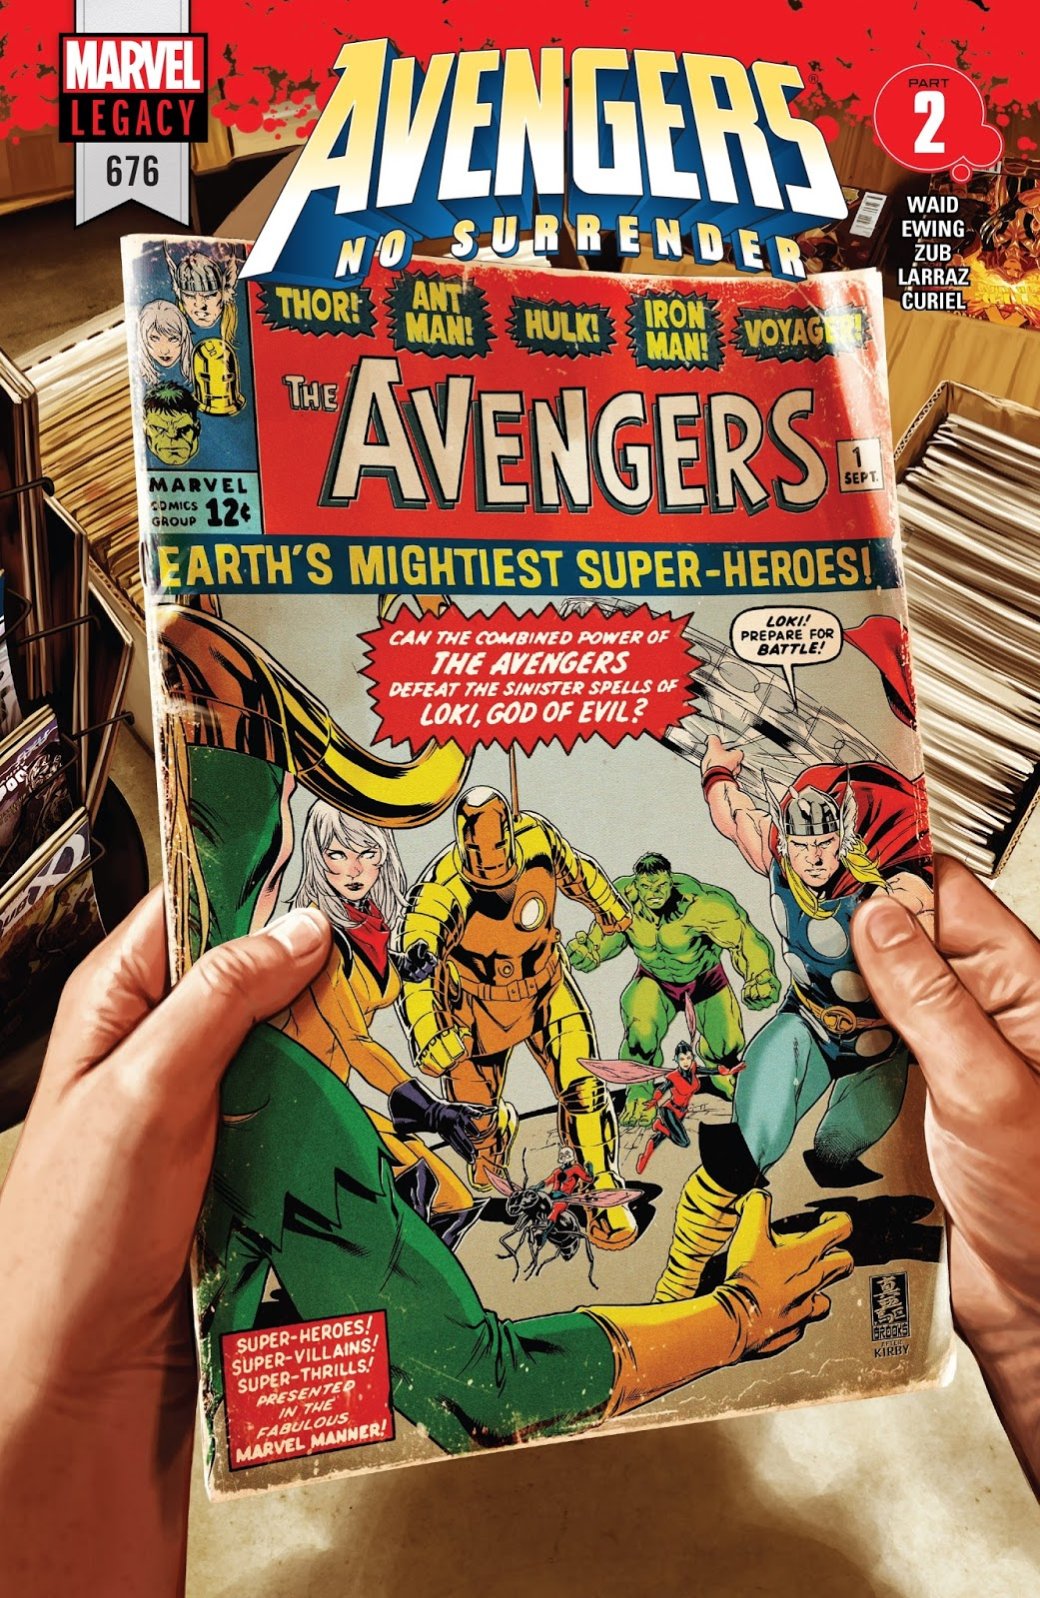 Галерея Avengers: No Surrender — самый бездарный комикс про Мстителей за последние годы - 1 фото